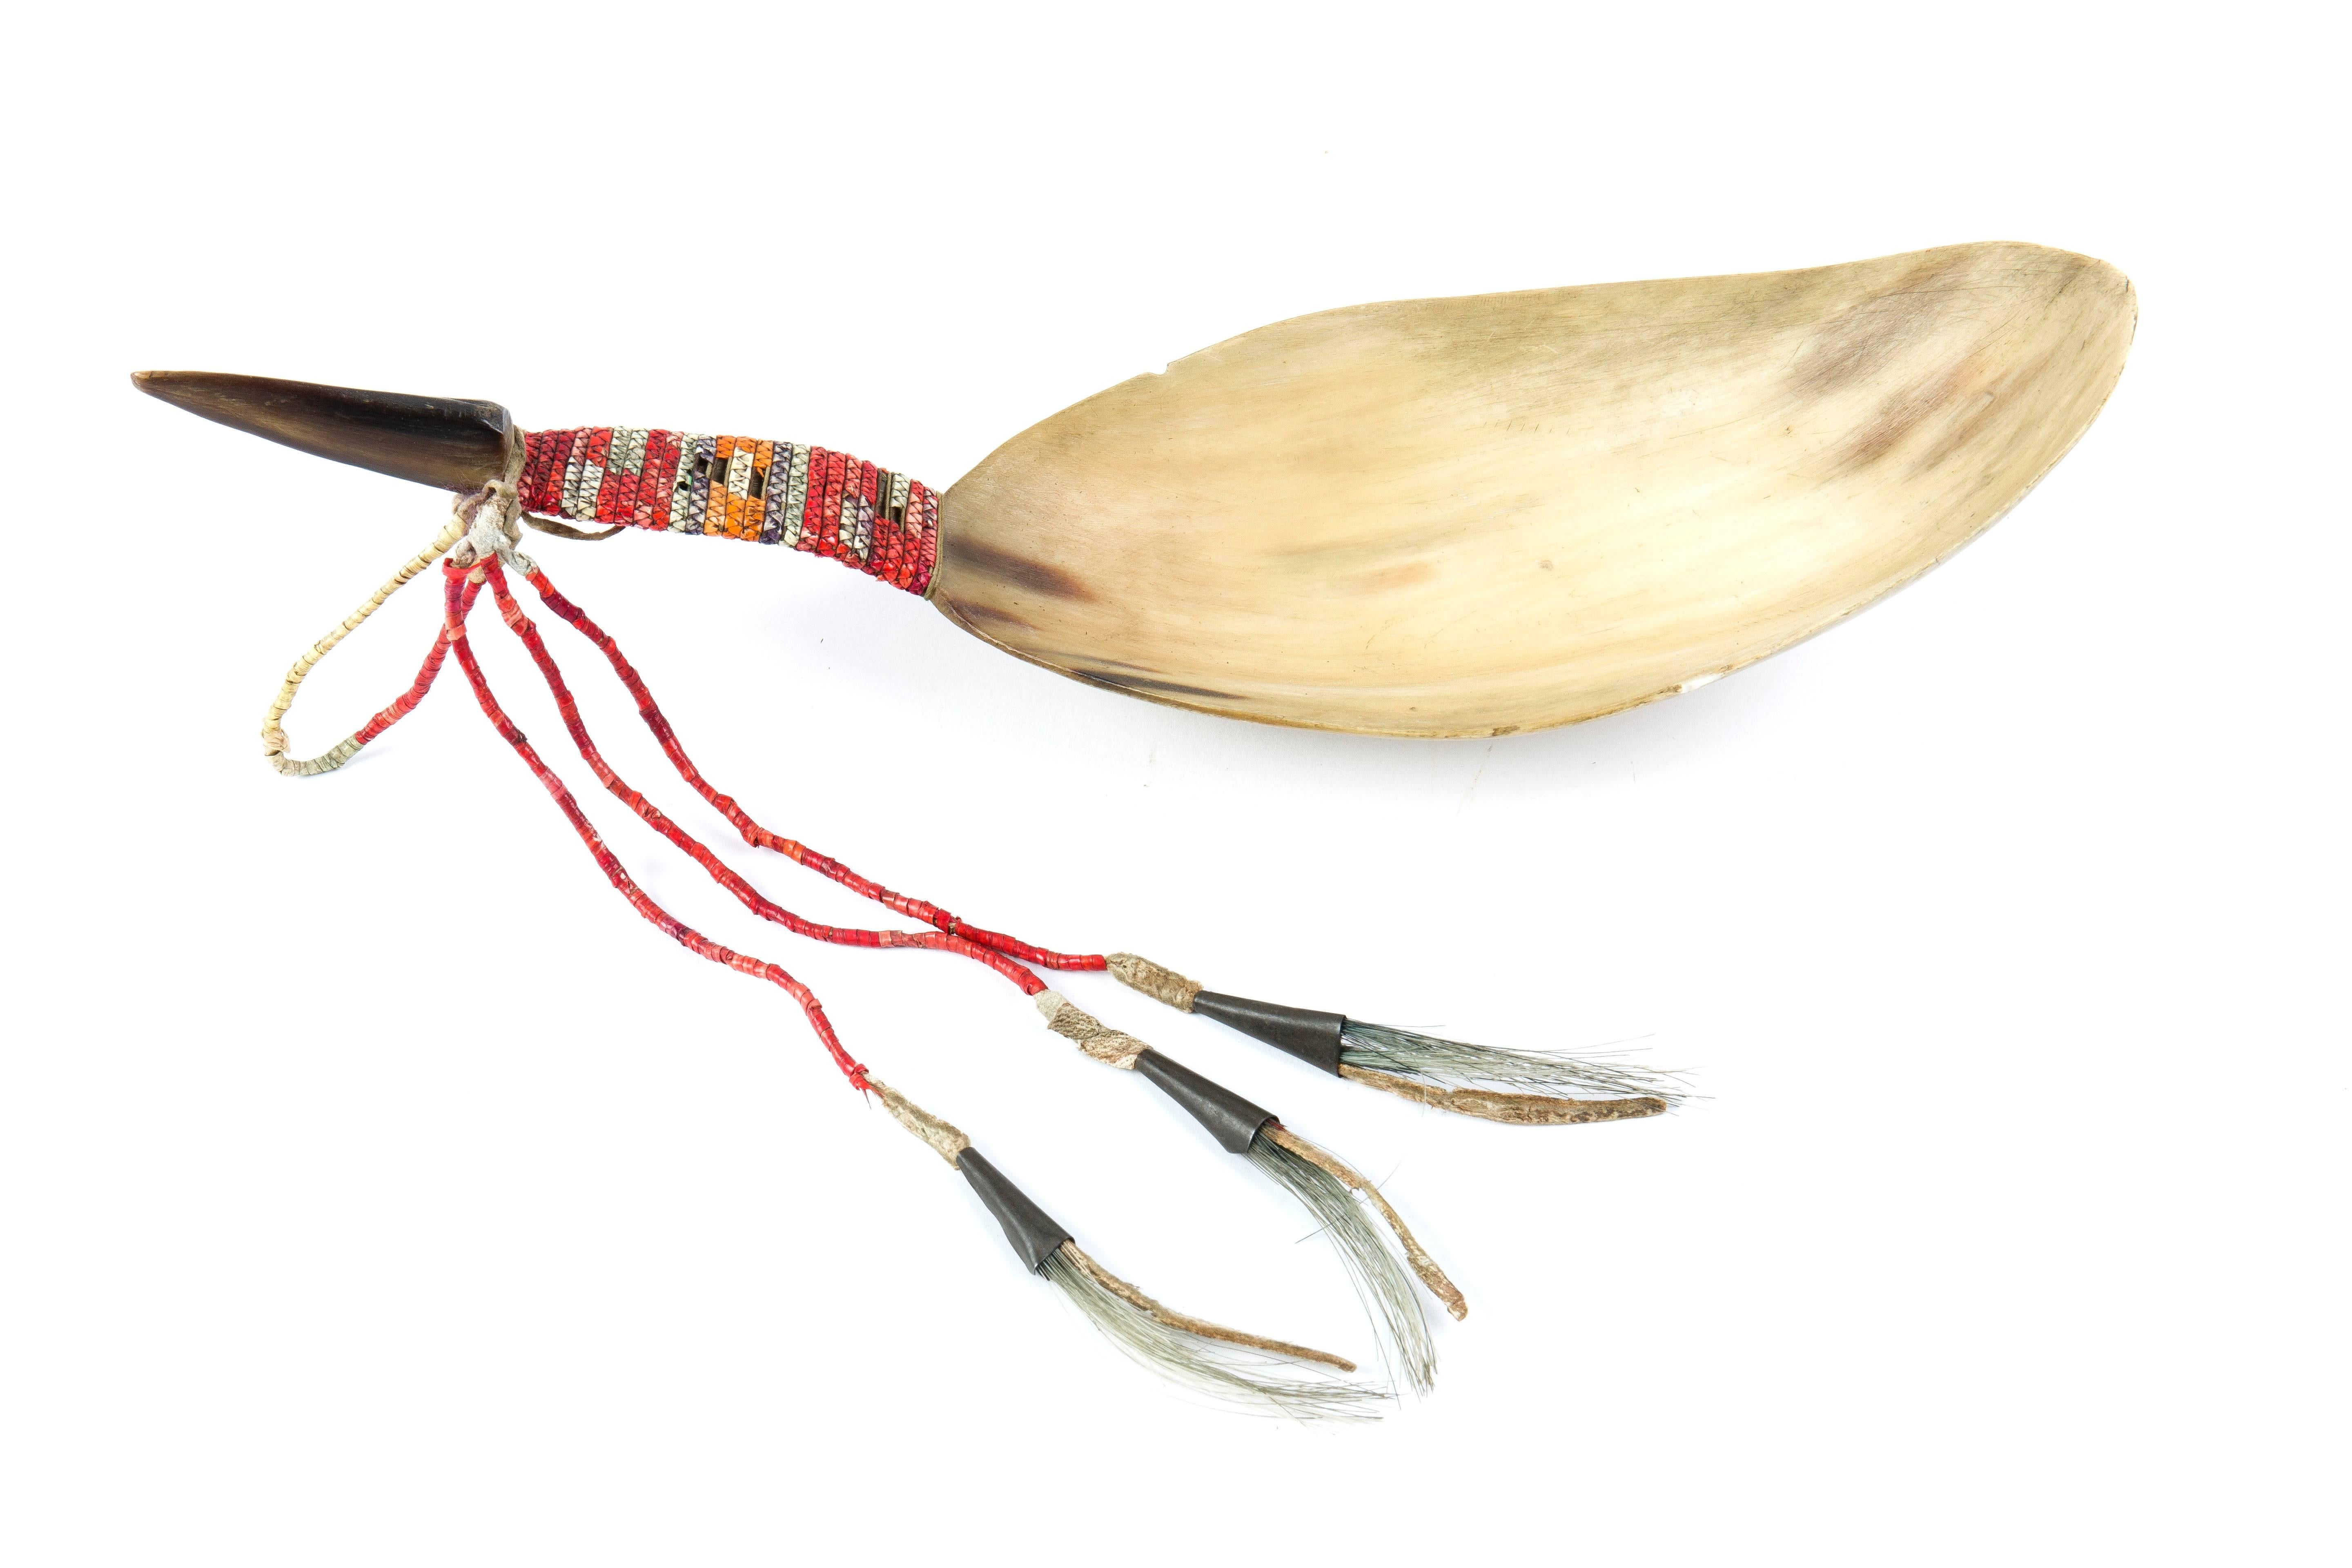 American Indian Art
Spoon Sioux
South Dakota, USA, circa 1890
Horn skin thongs, quill, metal cones, horsehair 